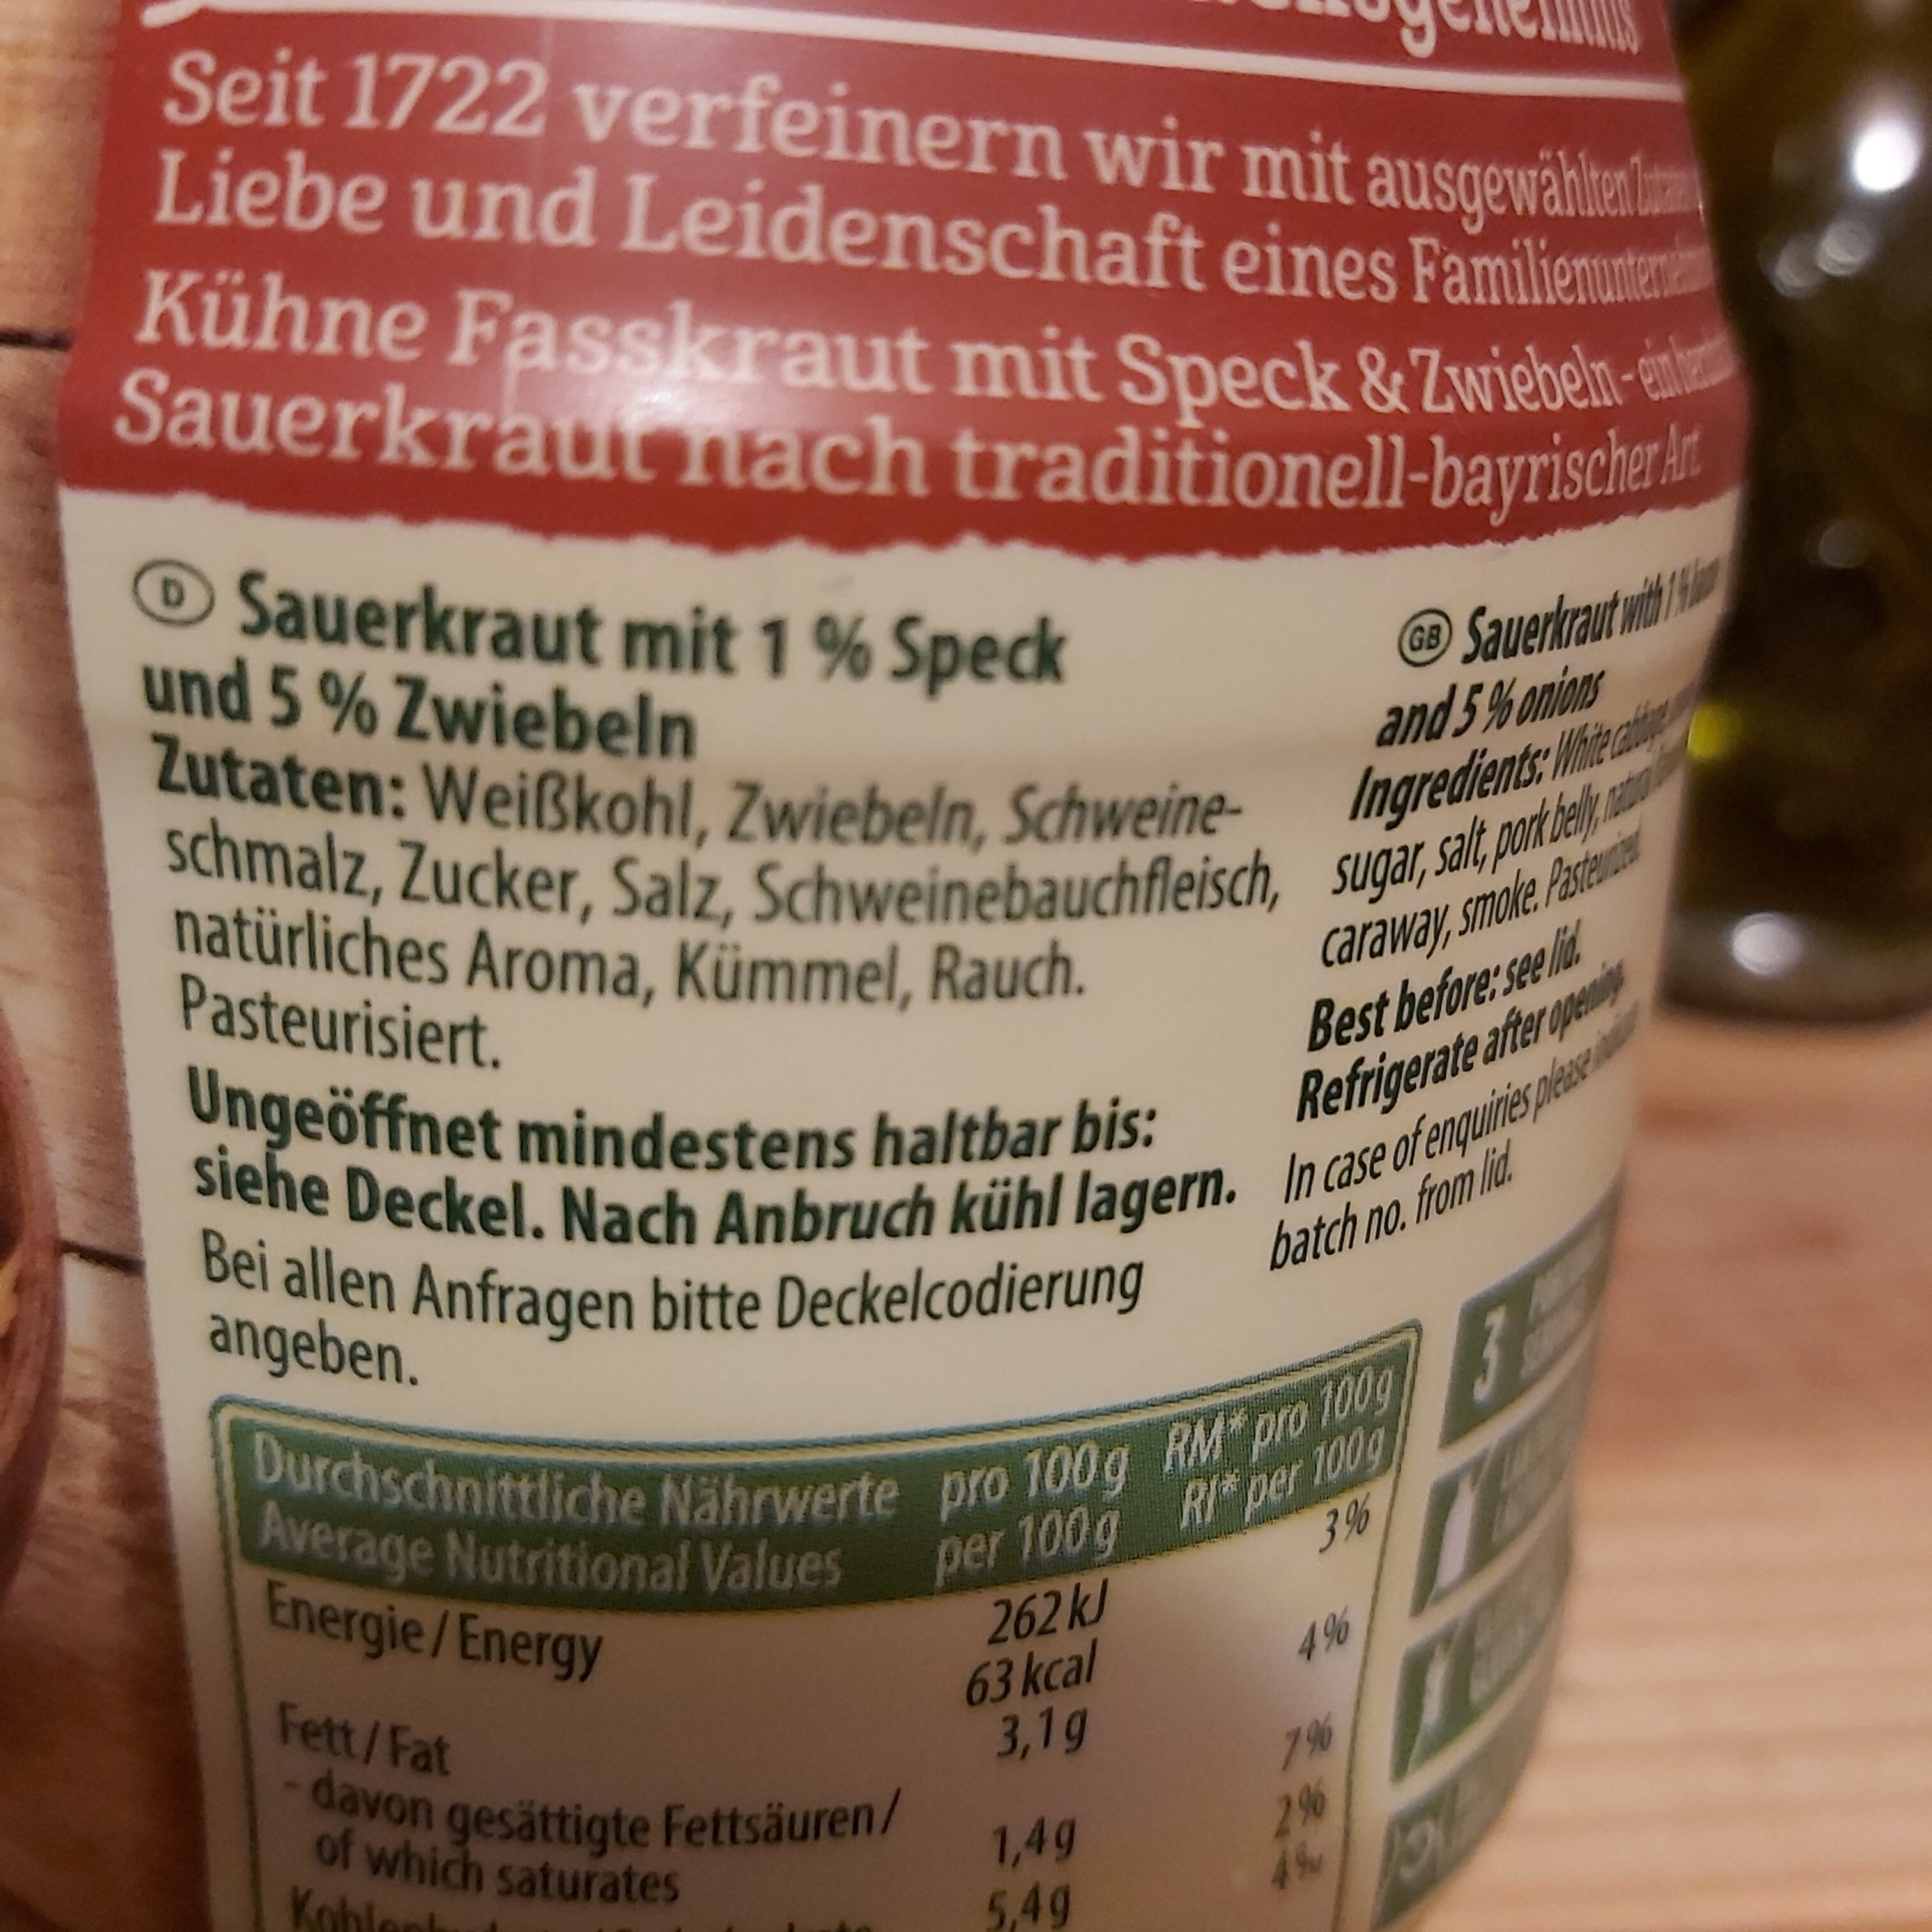 Sauerkraut Speck & Zwiebel - Zutaten